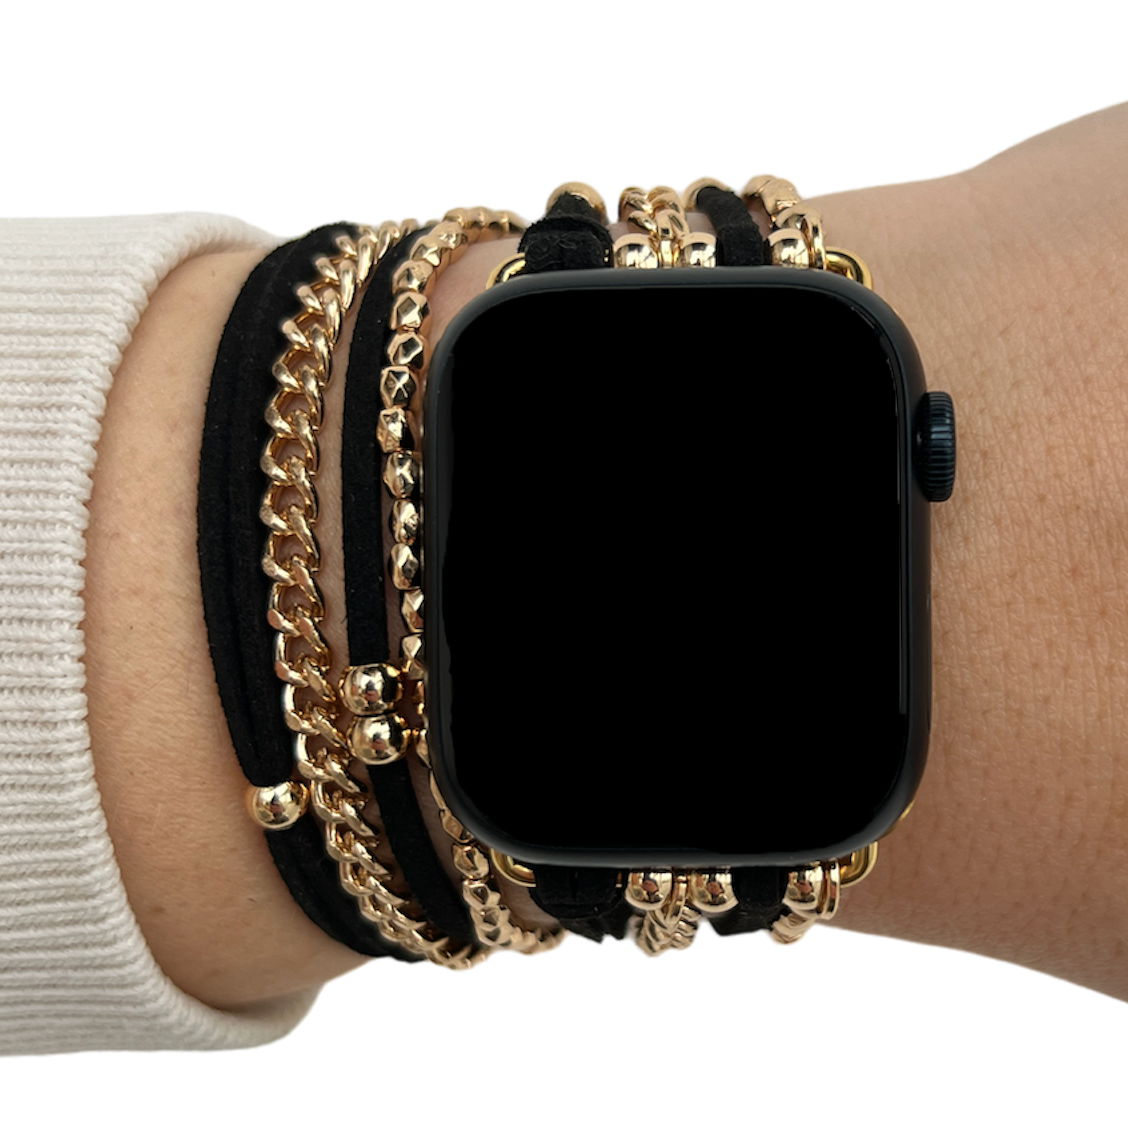 Apple Watch sieraden band - Nancy zwart goud